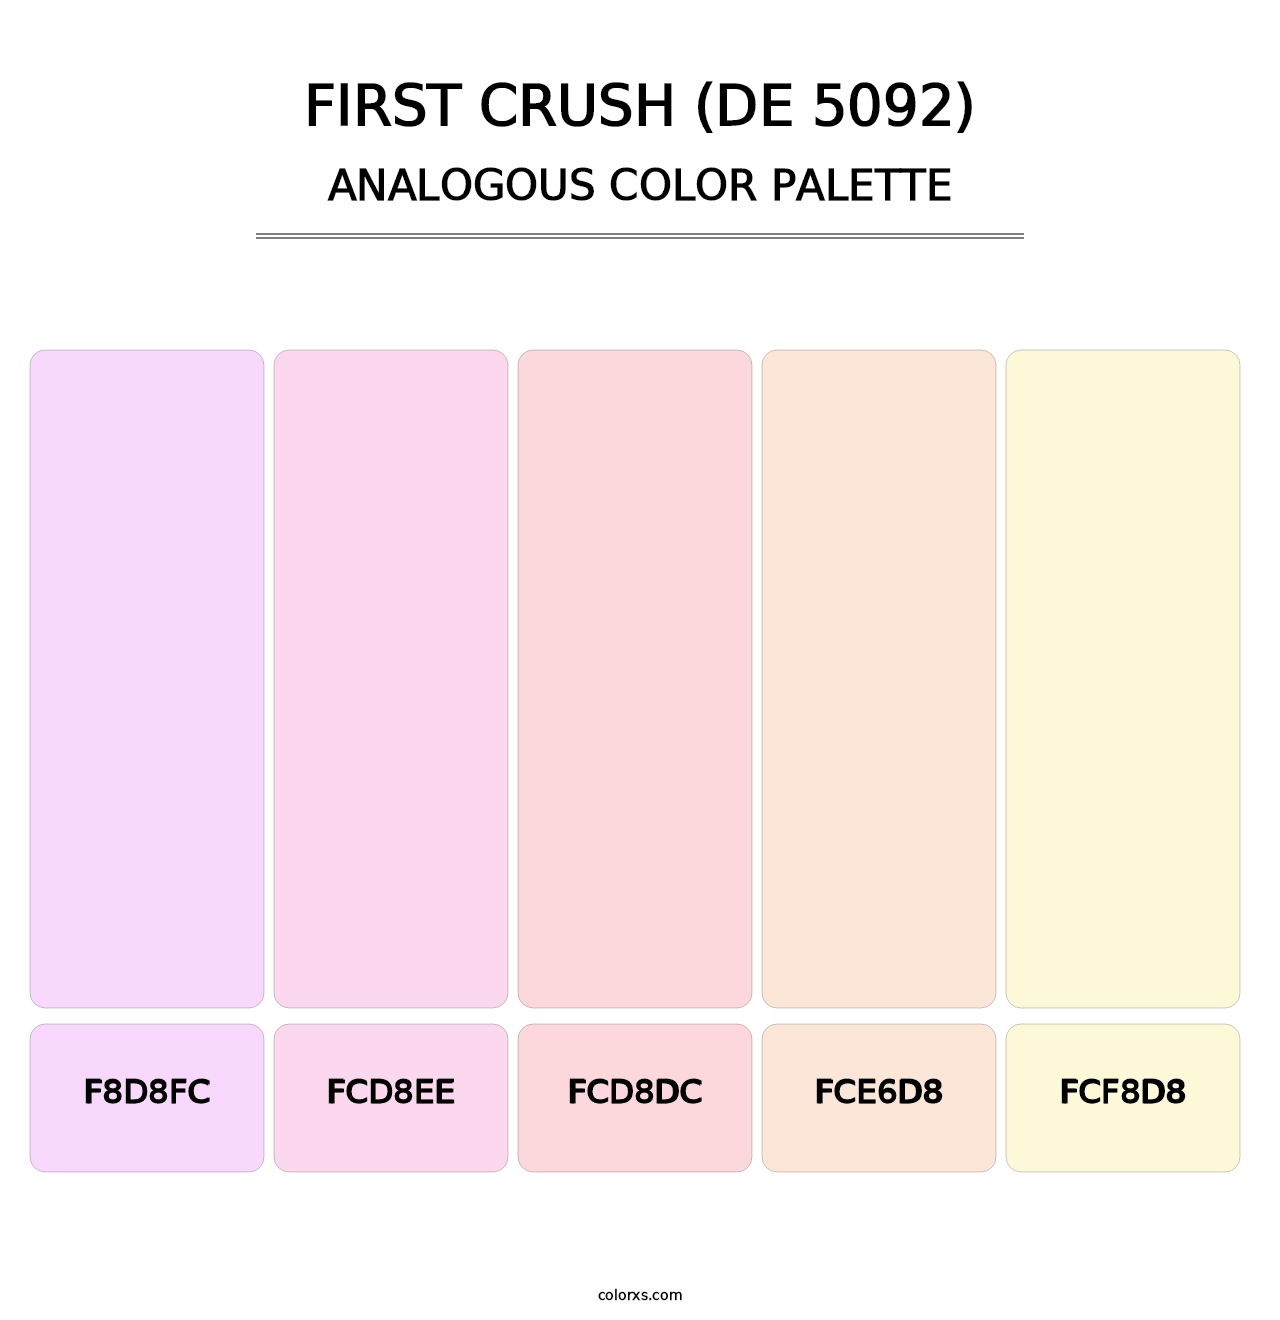 First Crush (DE 5092) - Analogous Color Palette